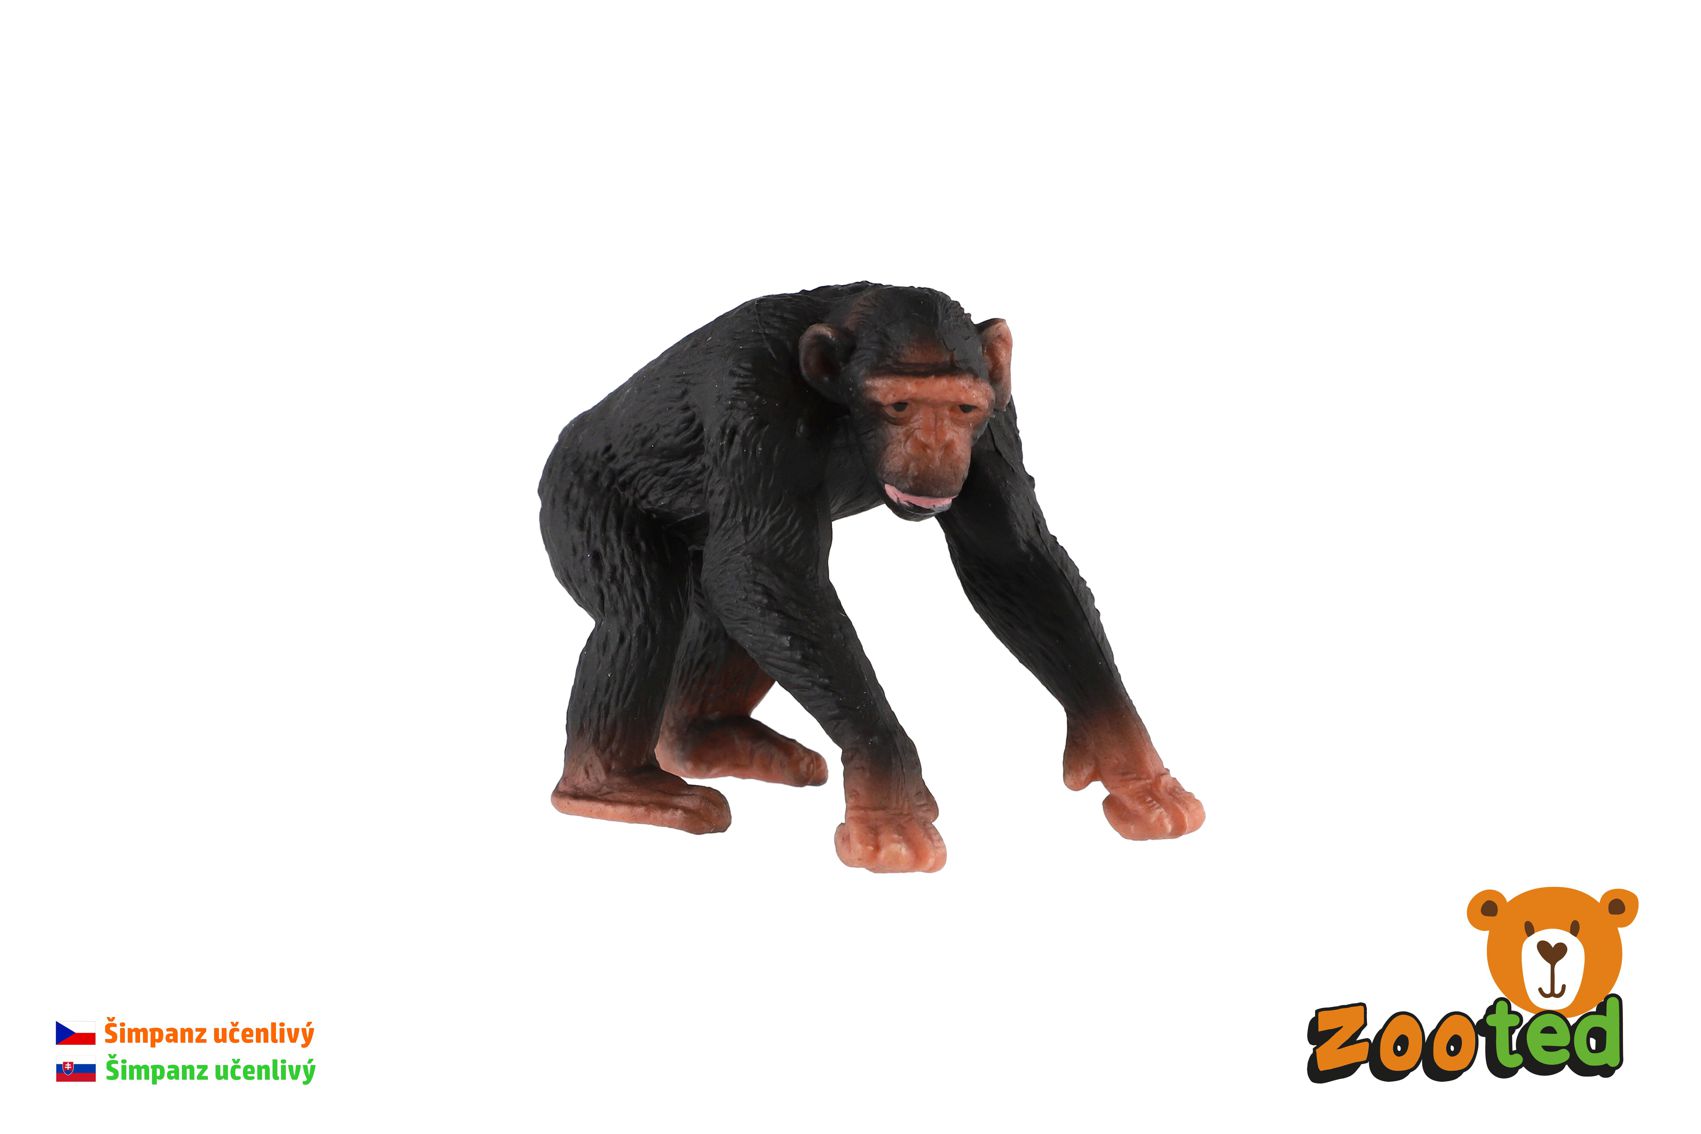 ZOOted Šimpanz učenlivý zooted plast 7cm v sáčku